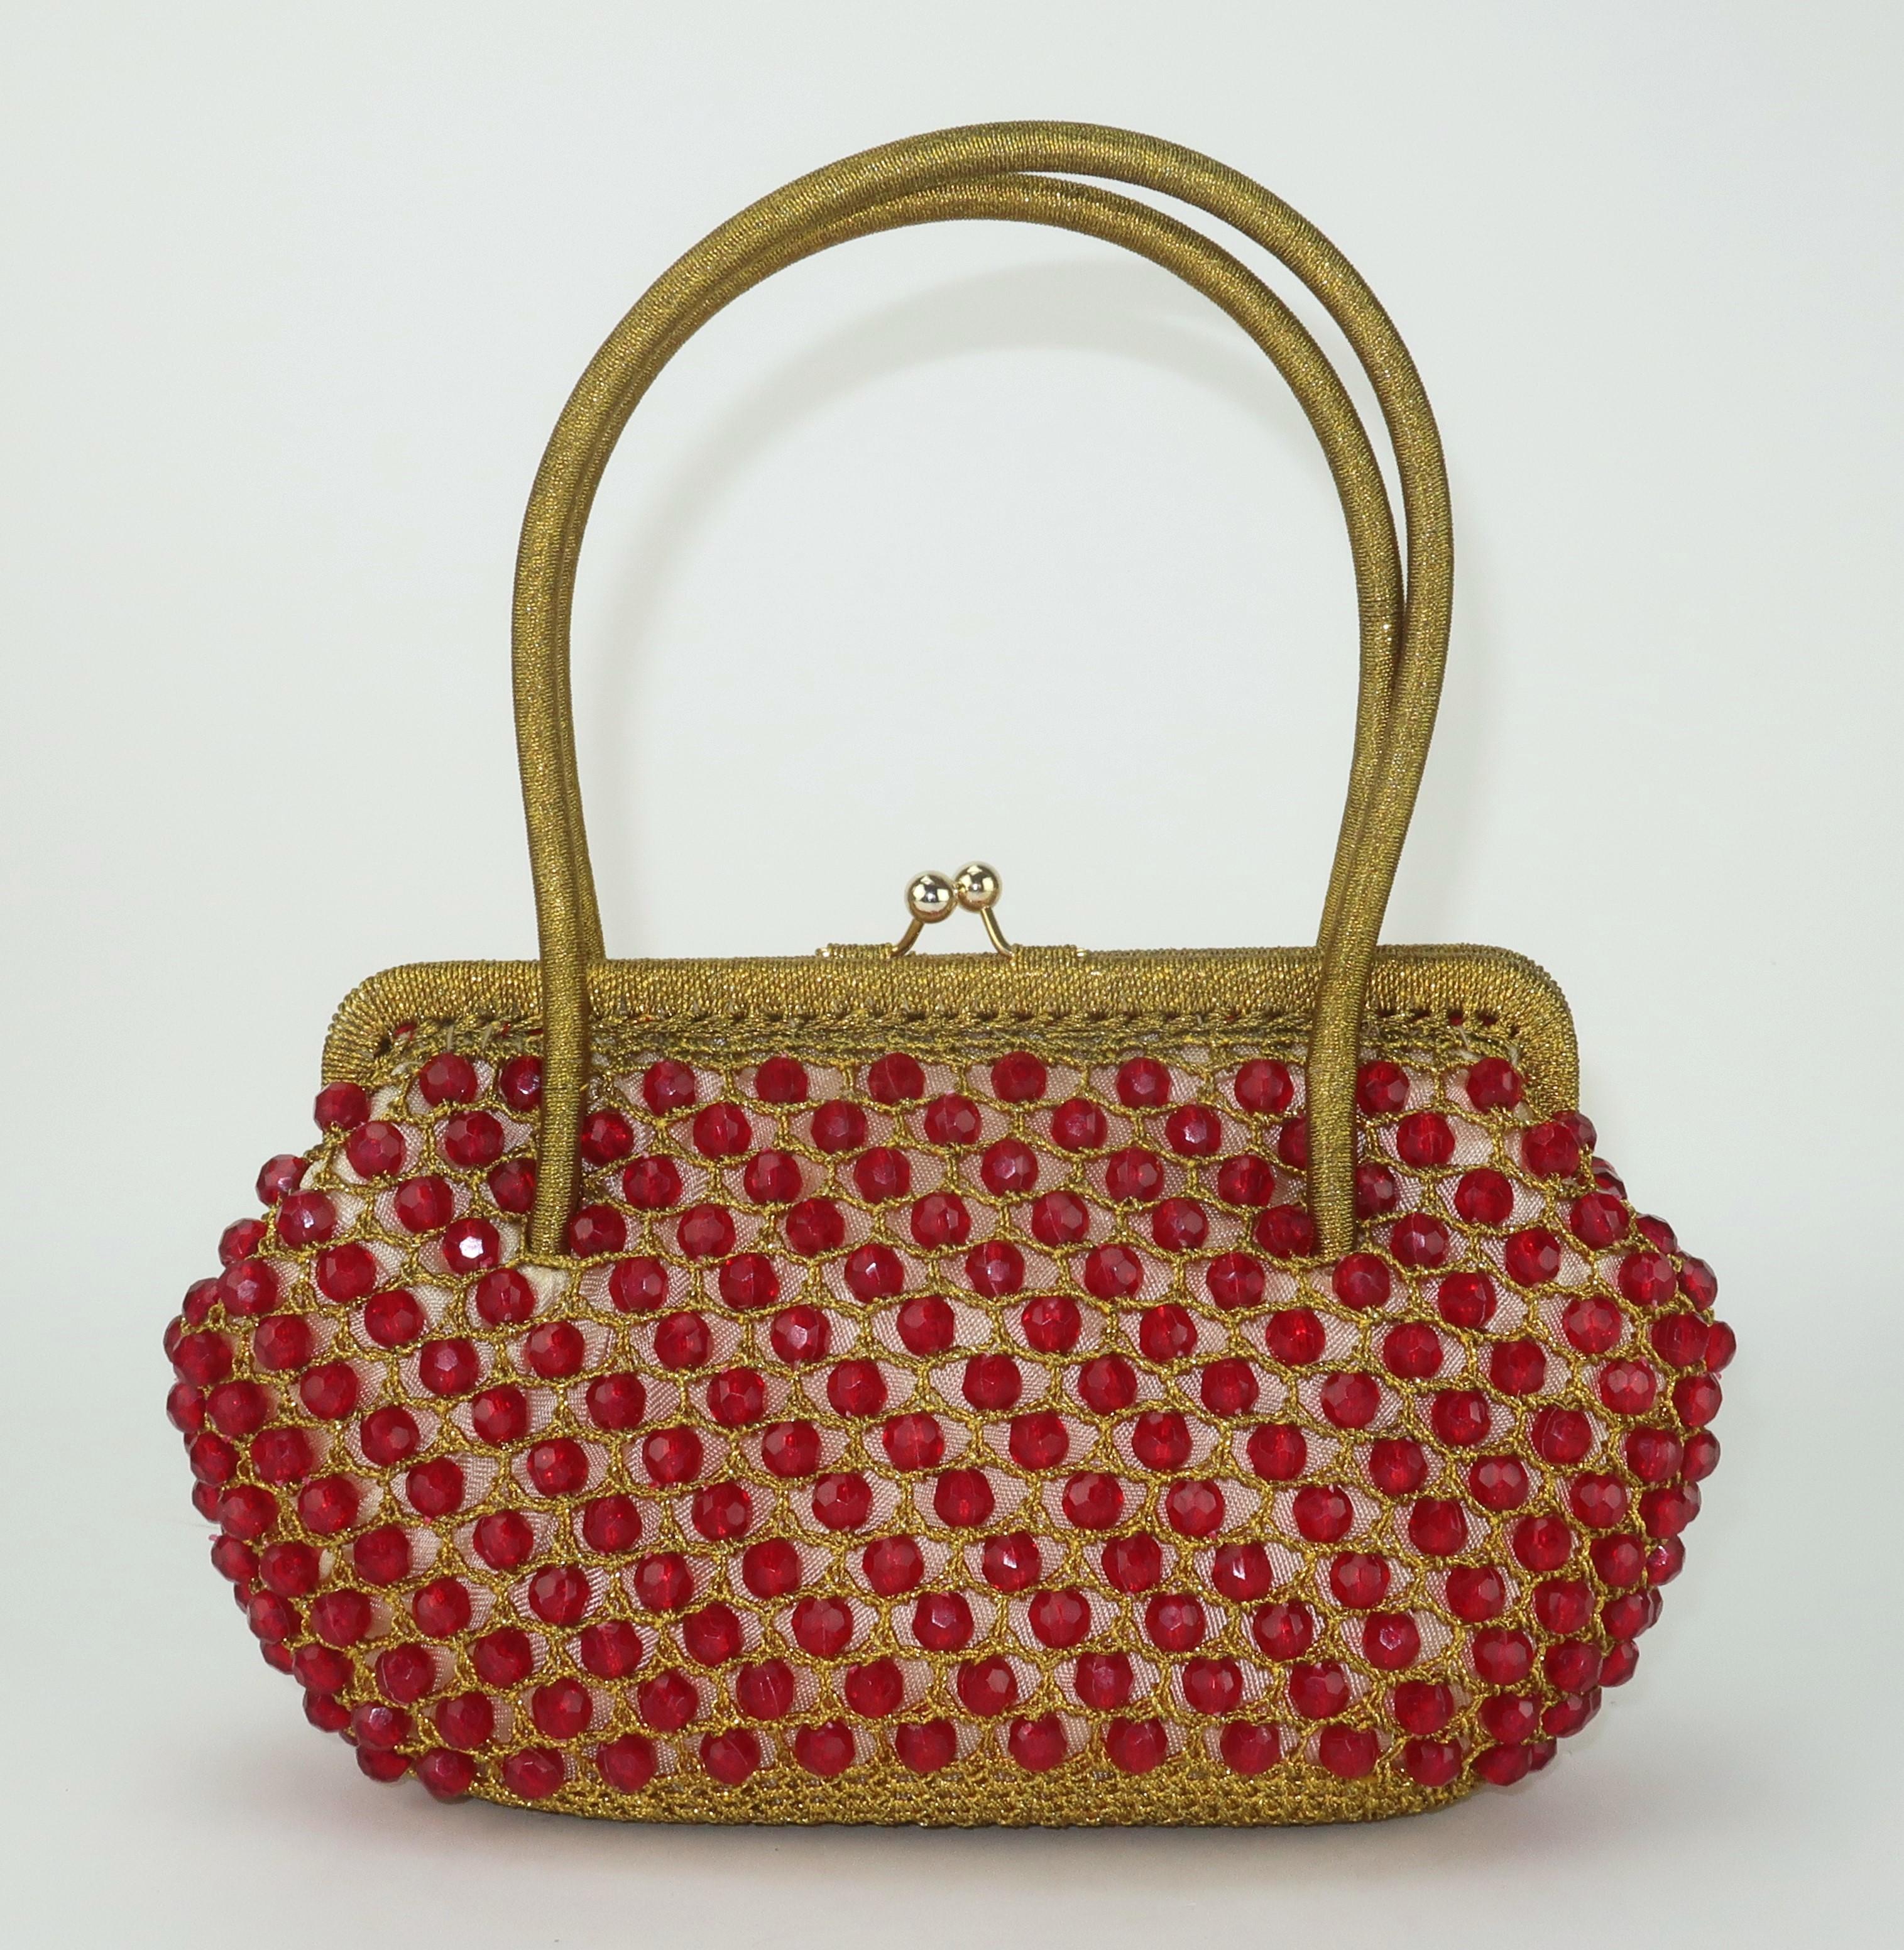 Sac à main Barbara Lee en crochet doré, fabriqué en Italie dans les années 1960, orné de perles à facettes rouge rubis.  Le sac à double poignée supérieure est doté d'une fermeture à baiser qui s'ouvre pour révéler un intérieur doublé de satin